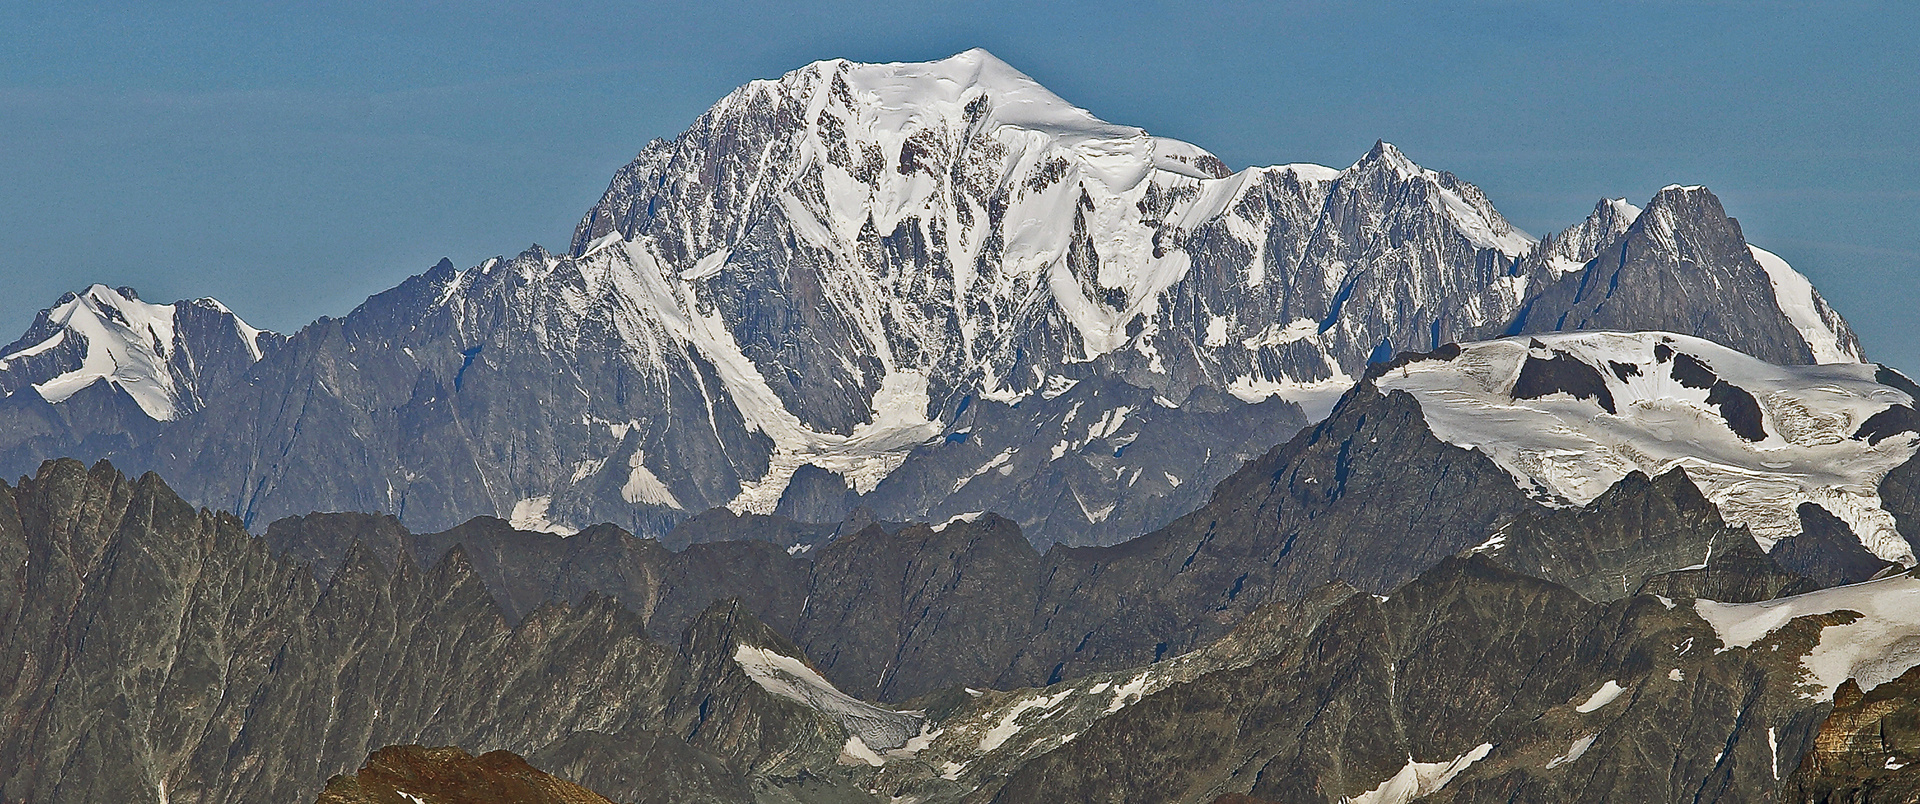 Der Mont Blanc in Chamonix Frankreich bei herausragender 70 km Sicht...